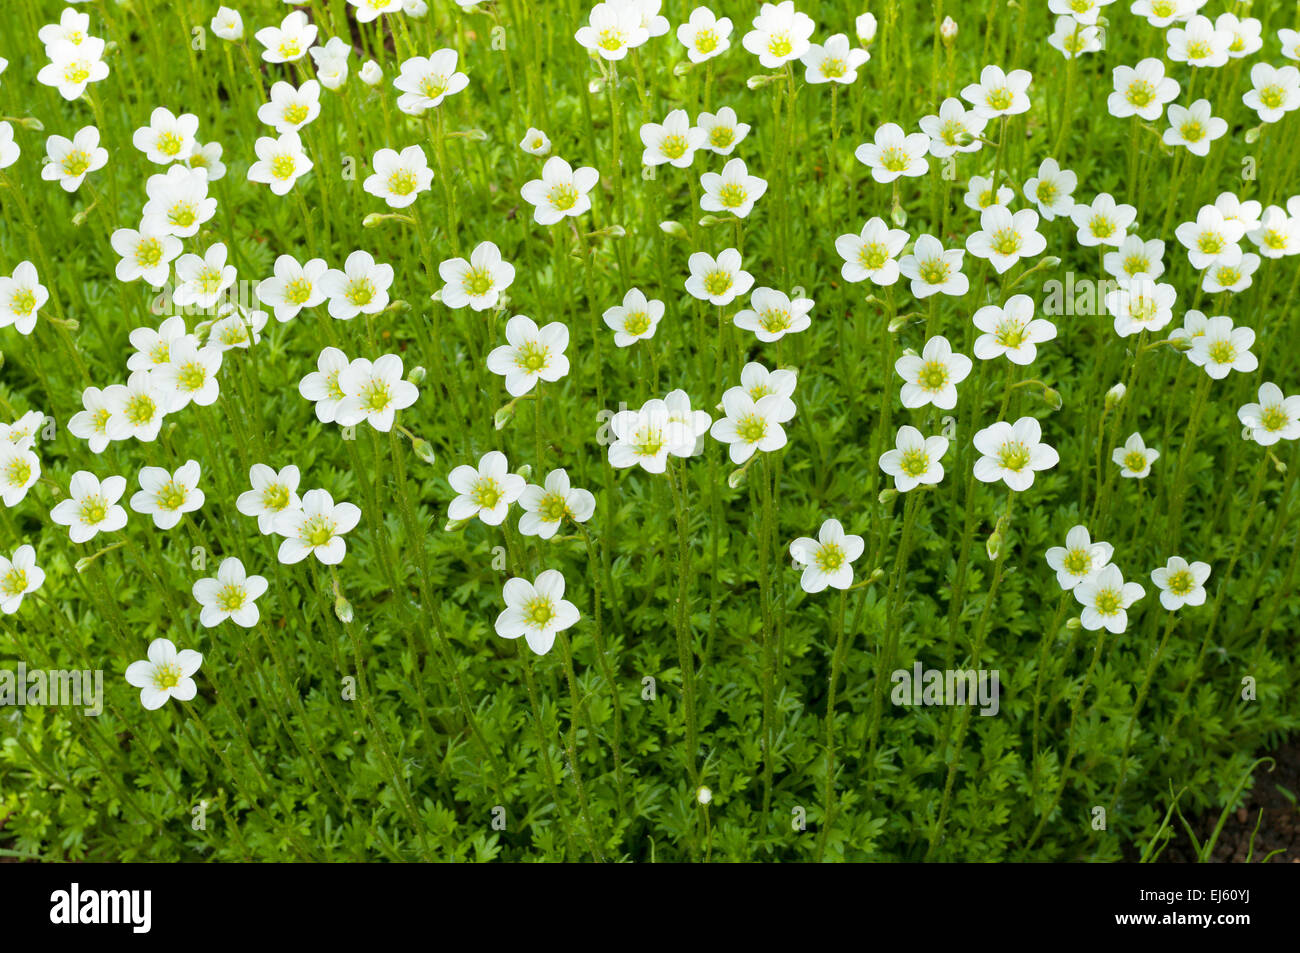 Blumen Hintergrund. Viele kleine weiße Blumen wachsen auf Boden  Stockfotografie - Alamy